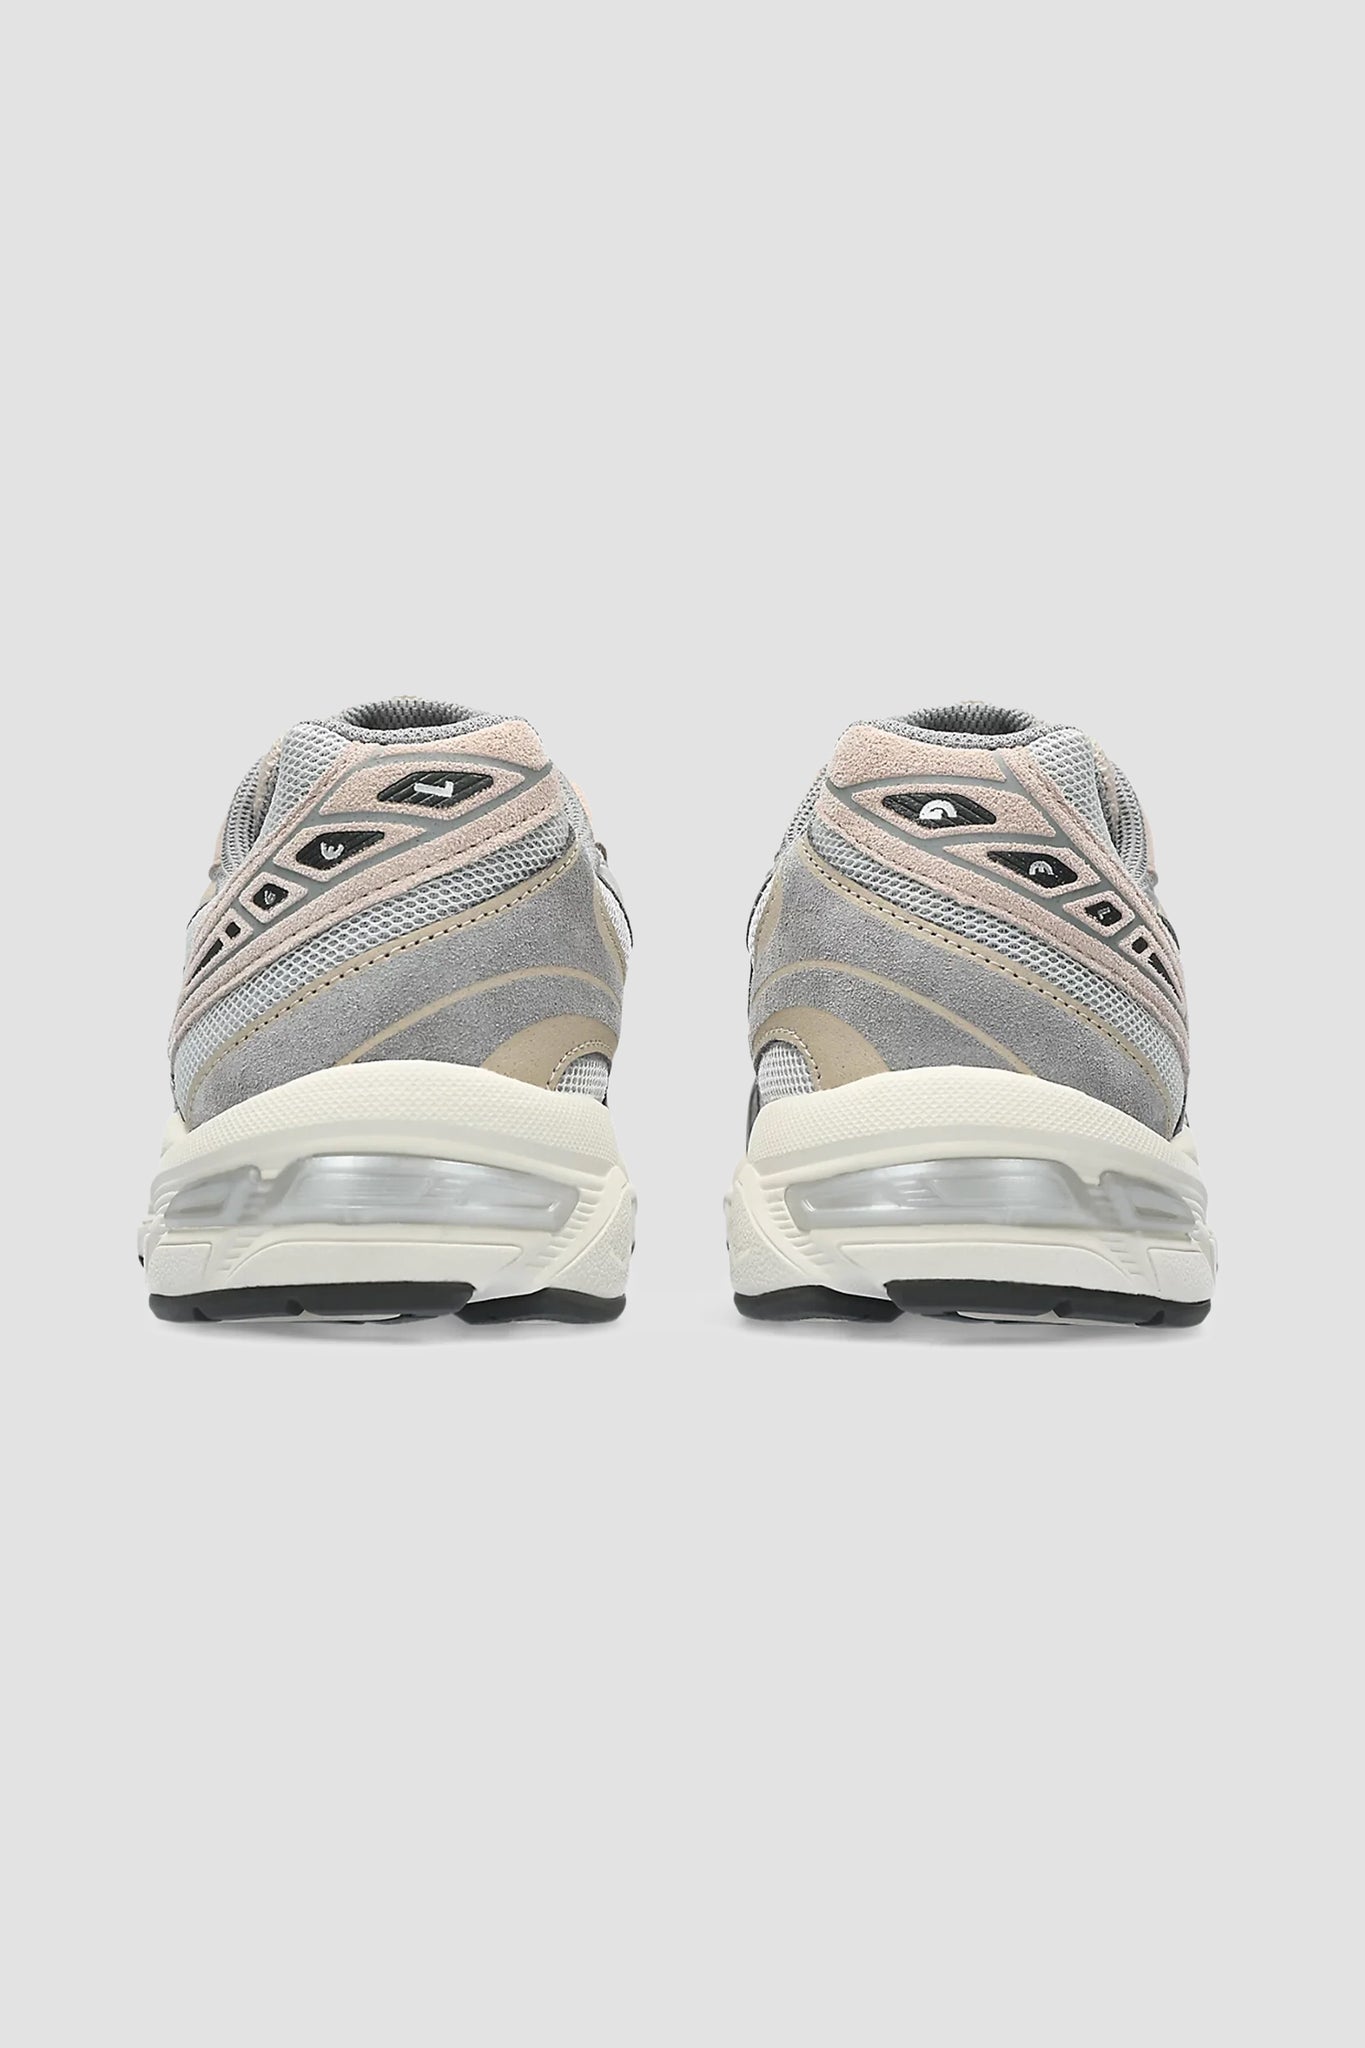 ASICS Men's Gel-1130 Sneaker in Oyster Grey/Clay Grey